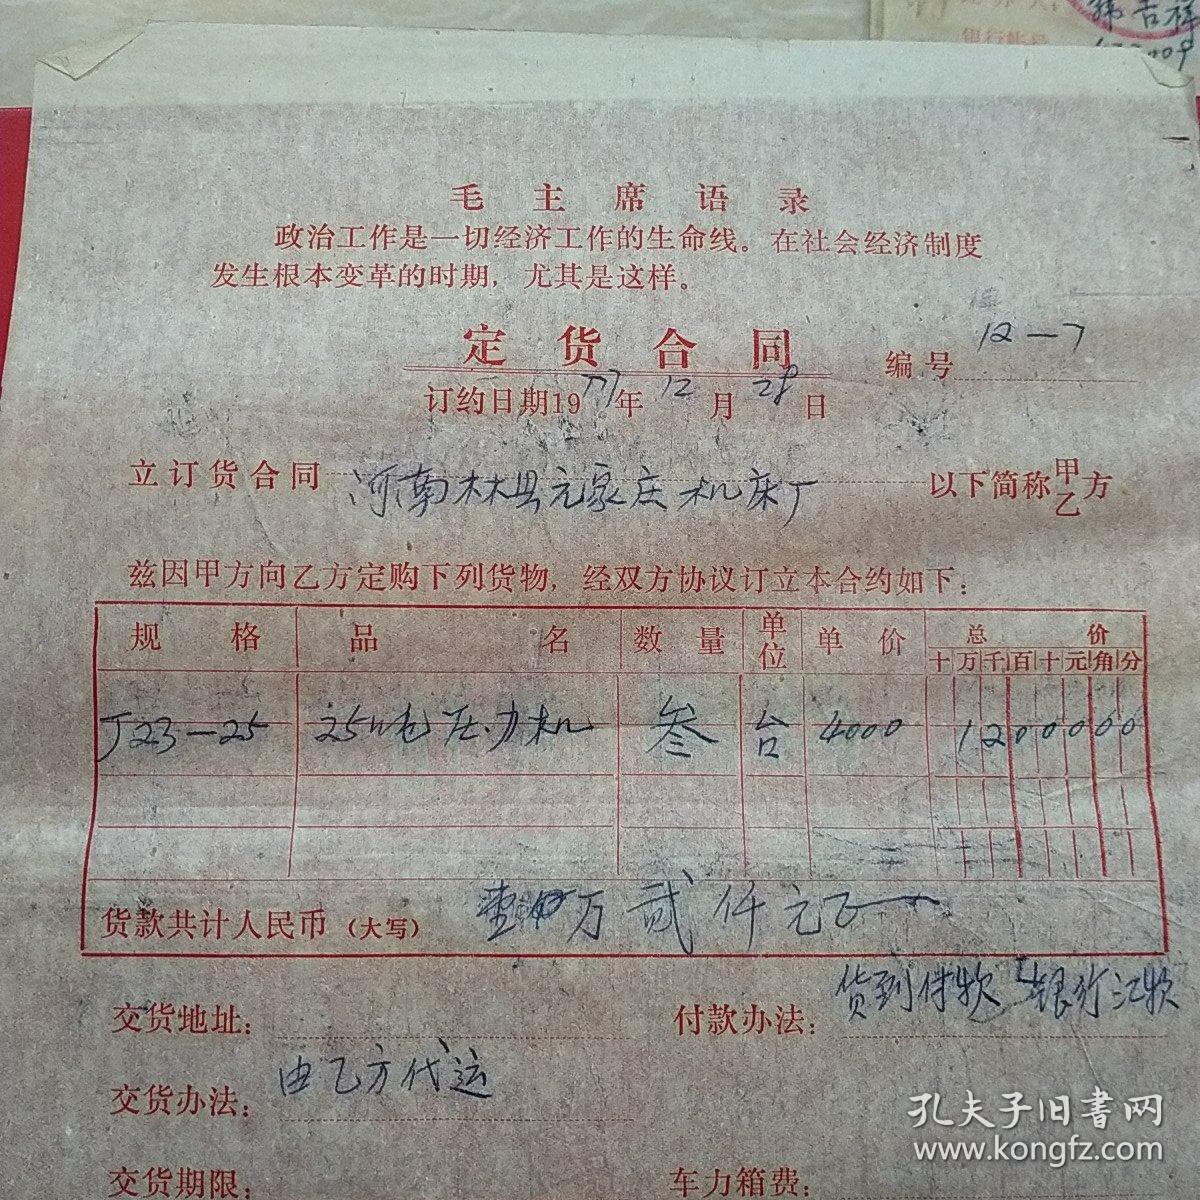 1977年12月28日，定货合同，河南林县（今林州市）元家庄机床厂革命委员会。（生日票据，语录票据，合同协议类）。（42-10）